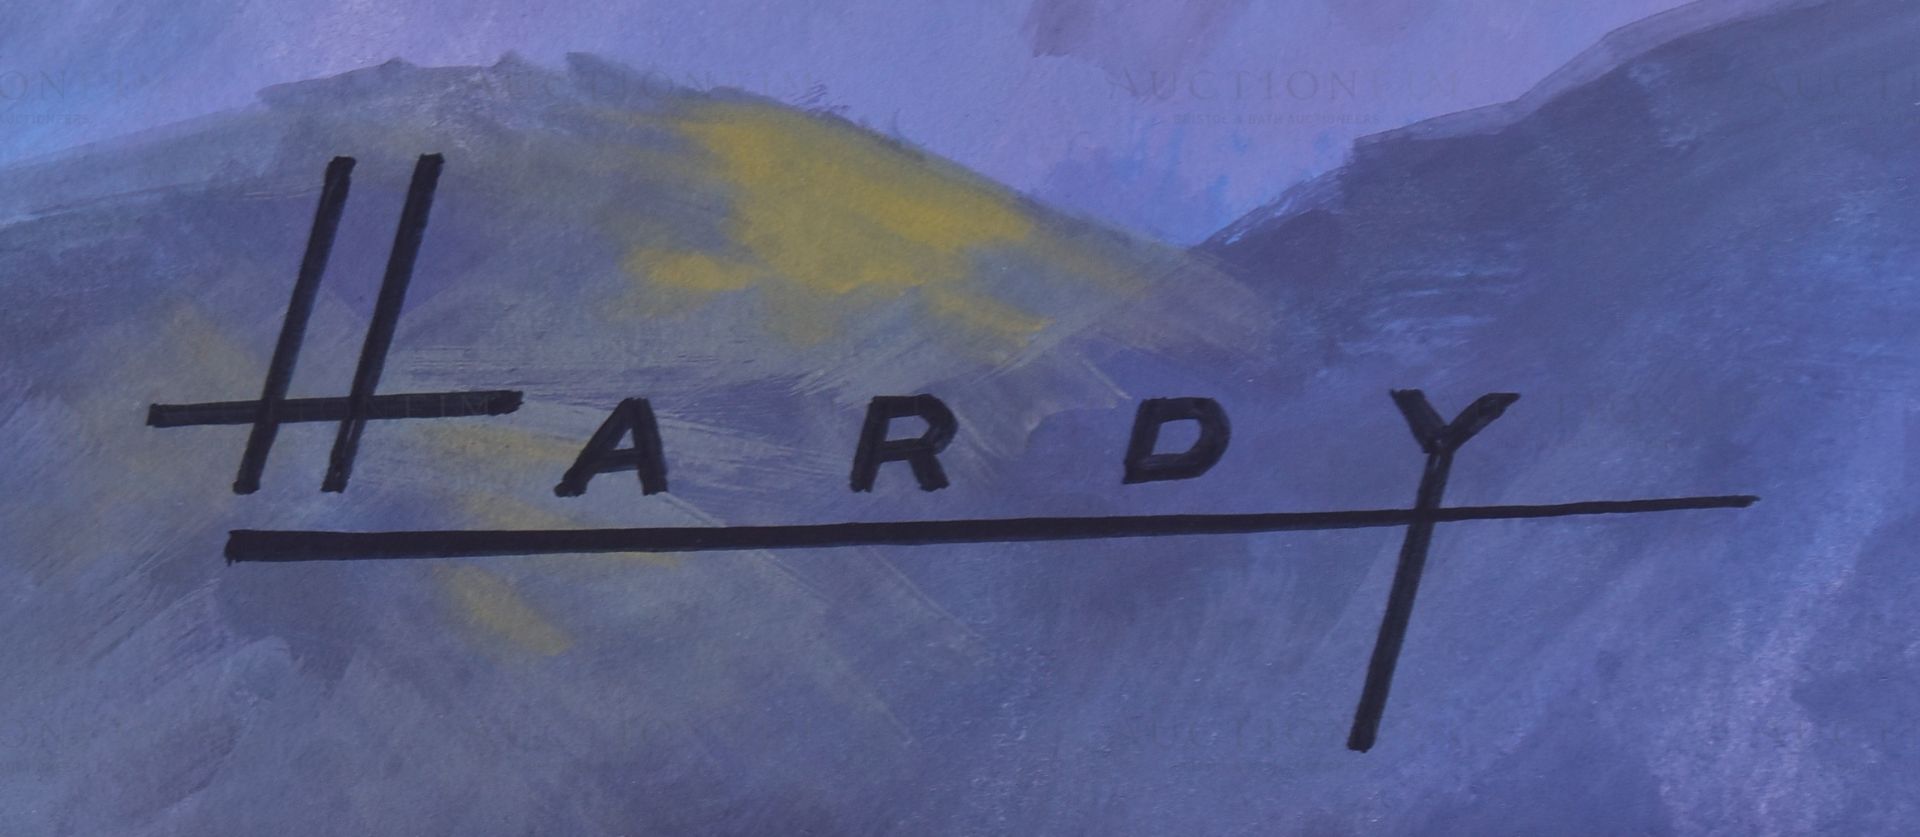 WILFRED HARDY - CASTELLA CIGARS - ORIGINAL ARTWORK - Bild 4 aus 6